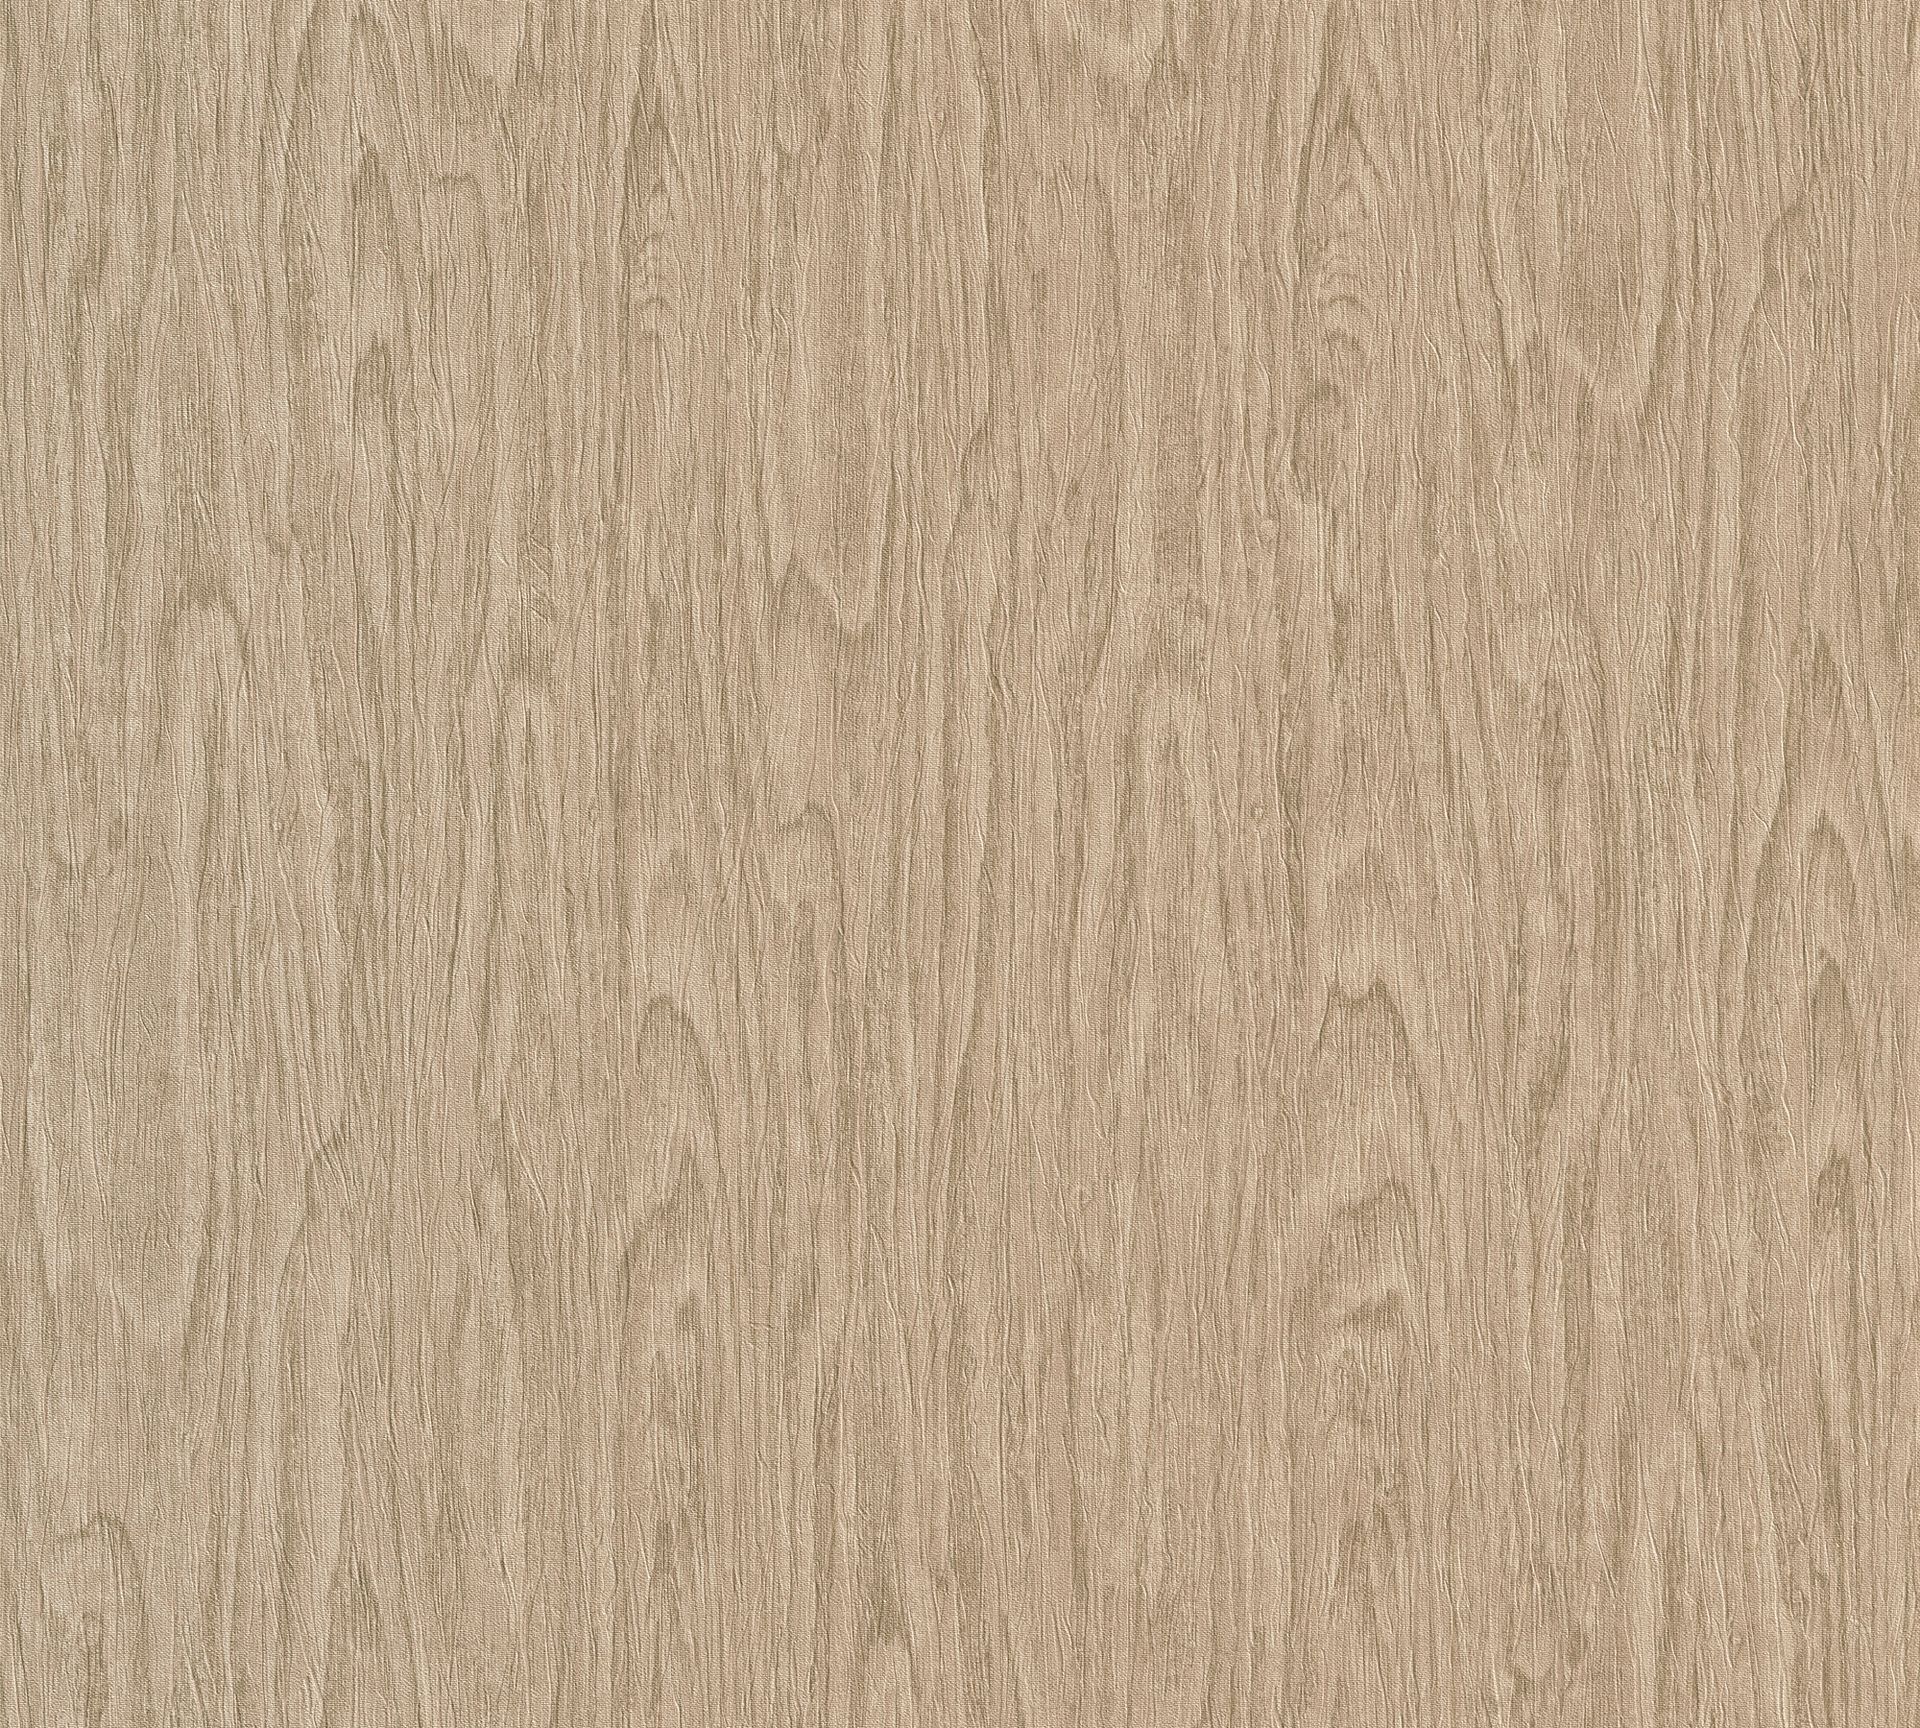 Versace wallpaper Versace 4, Tapete in Holzoptik, beige, braun 370522